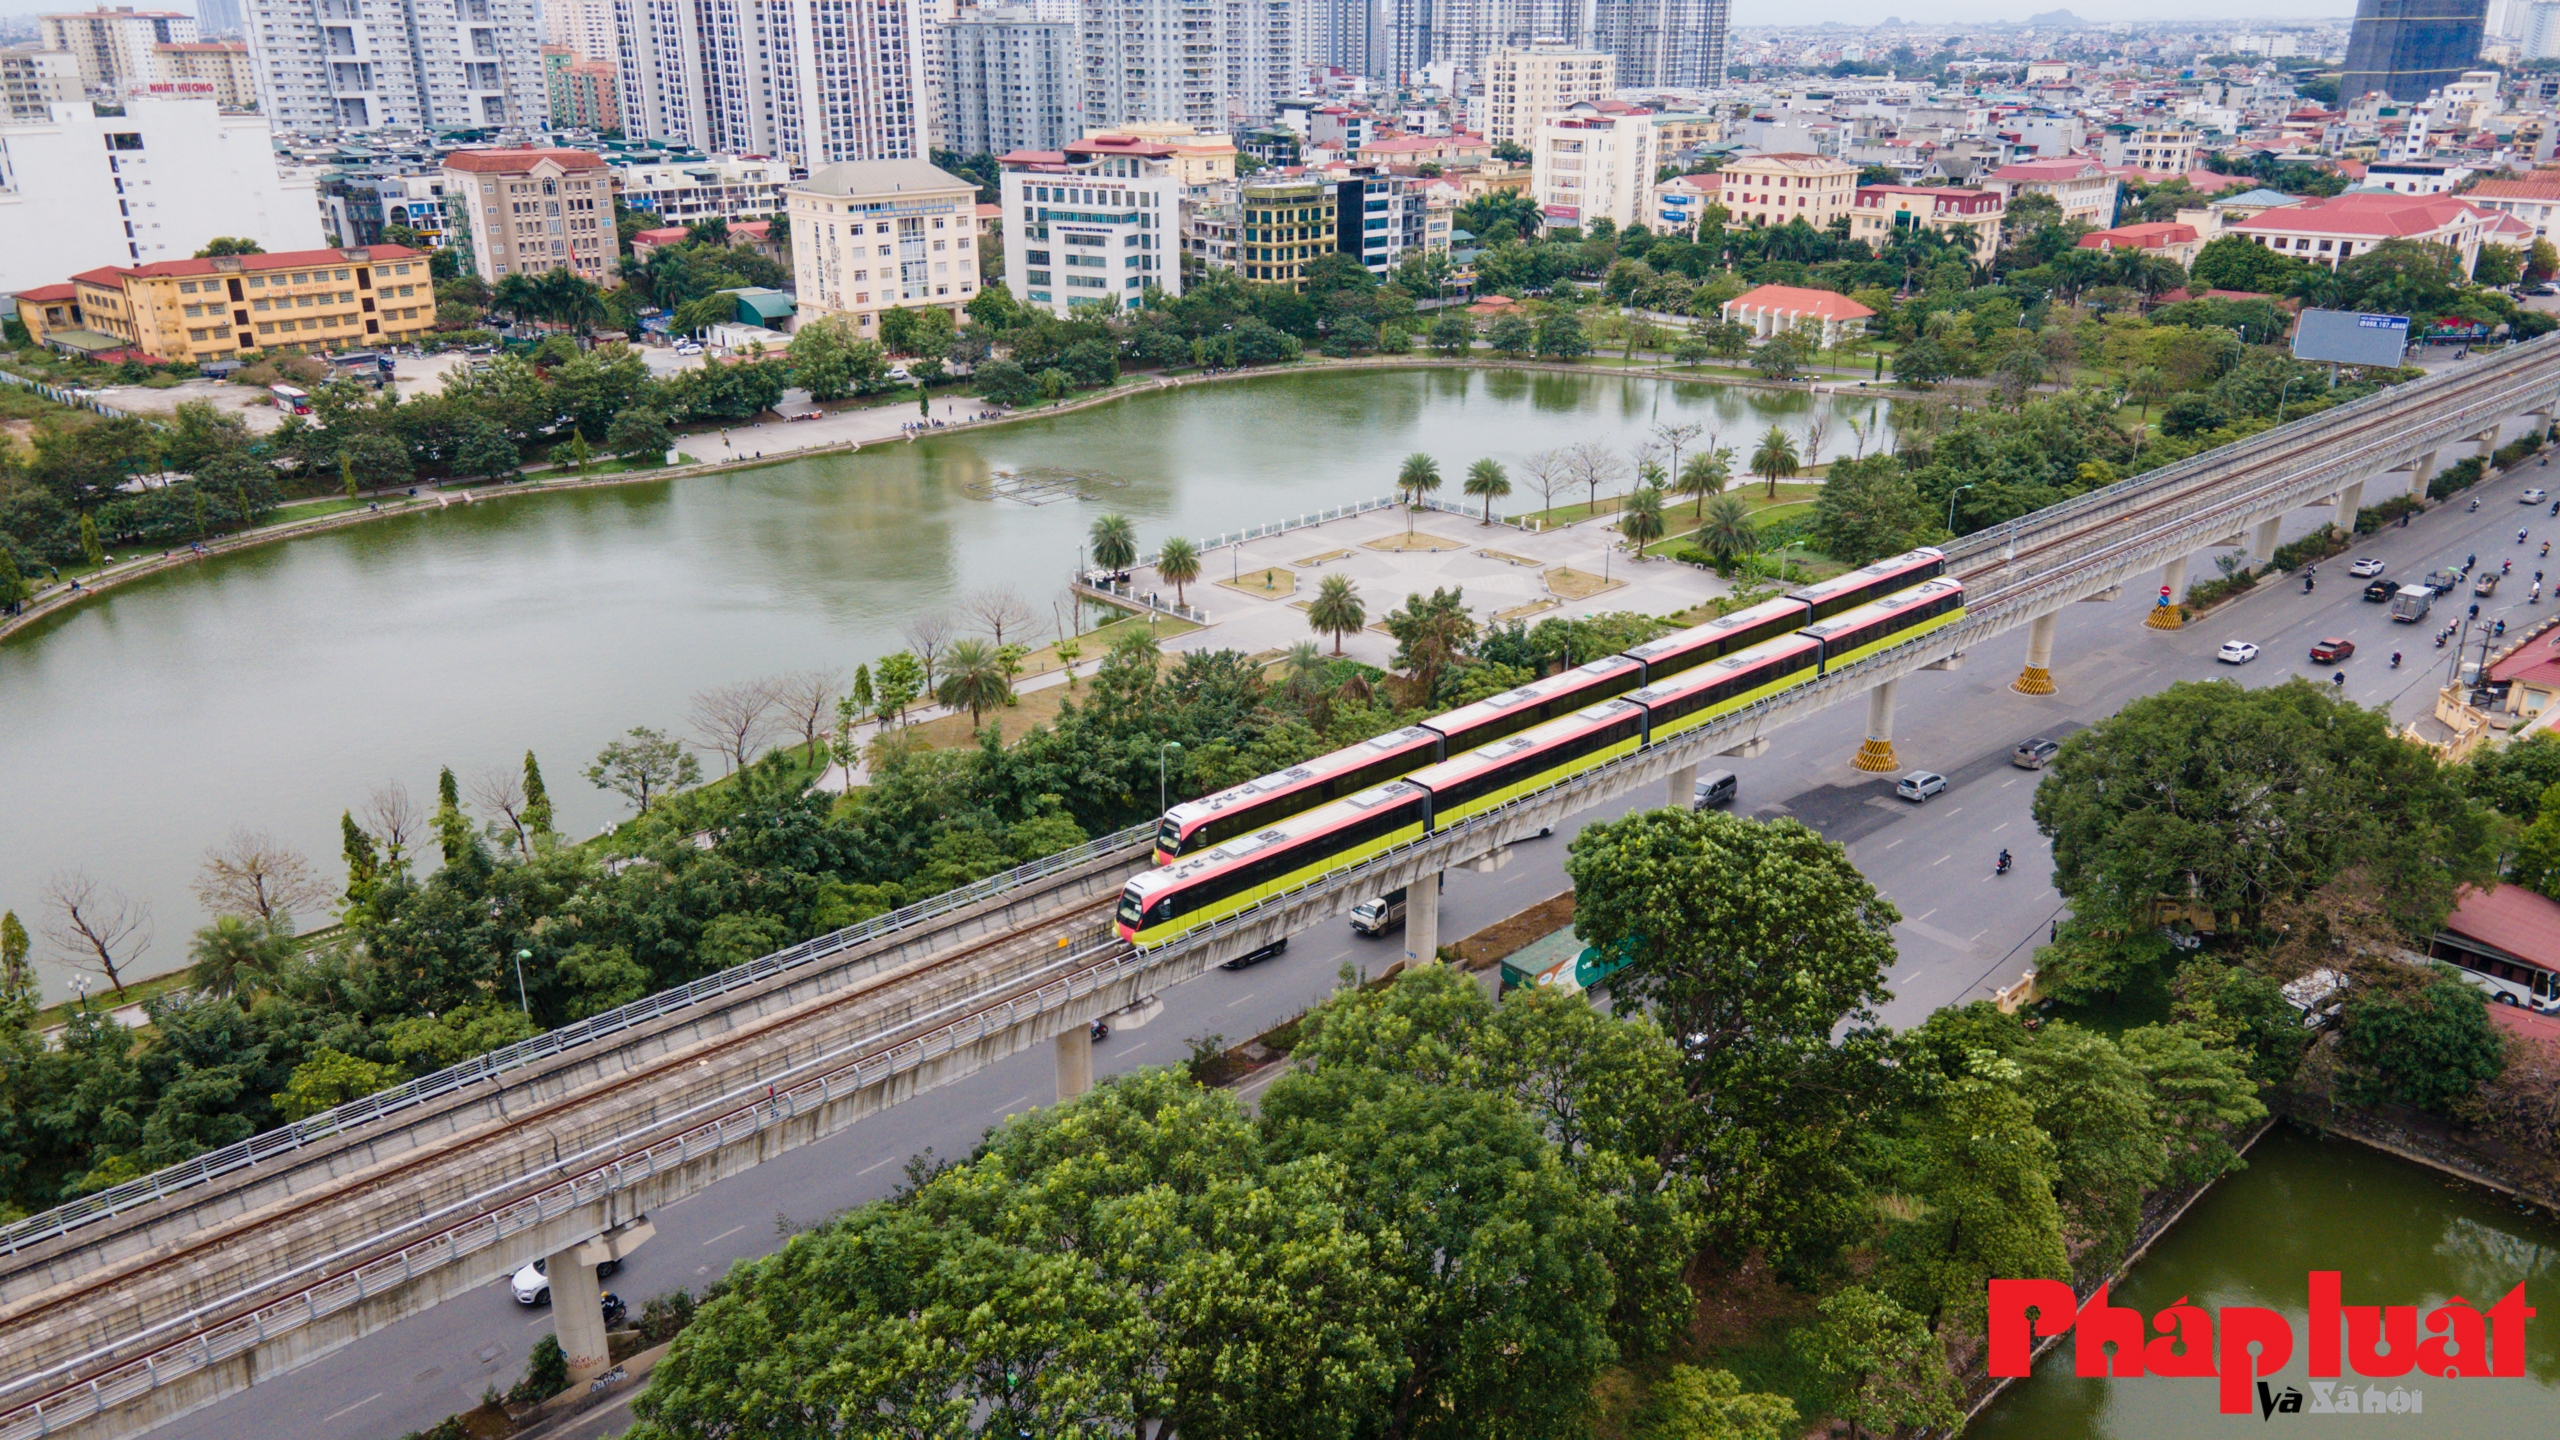 8 đoàn tàu Metro Nhổn - Ga Hà Nội liên tục chạy thử liên động